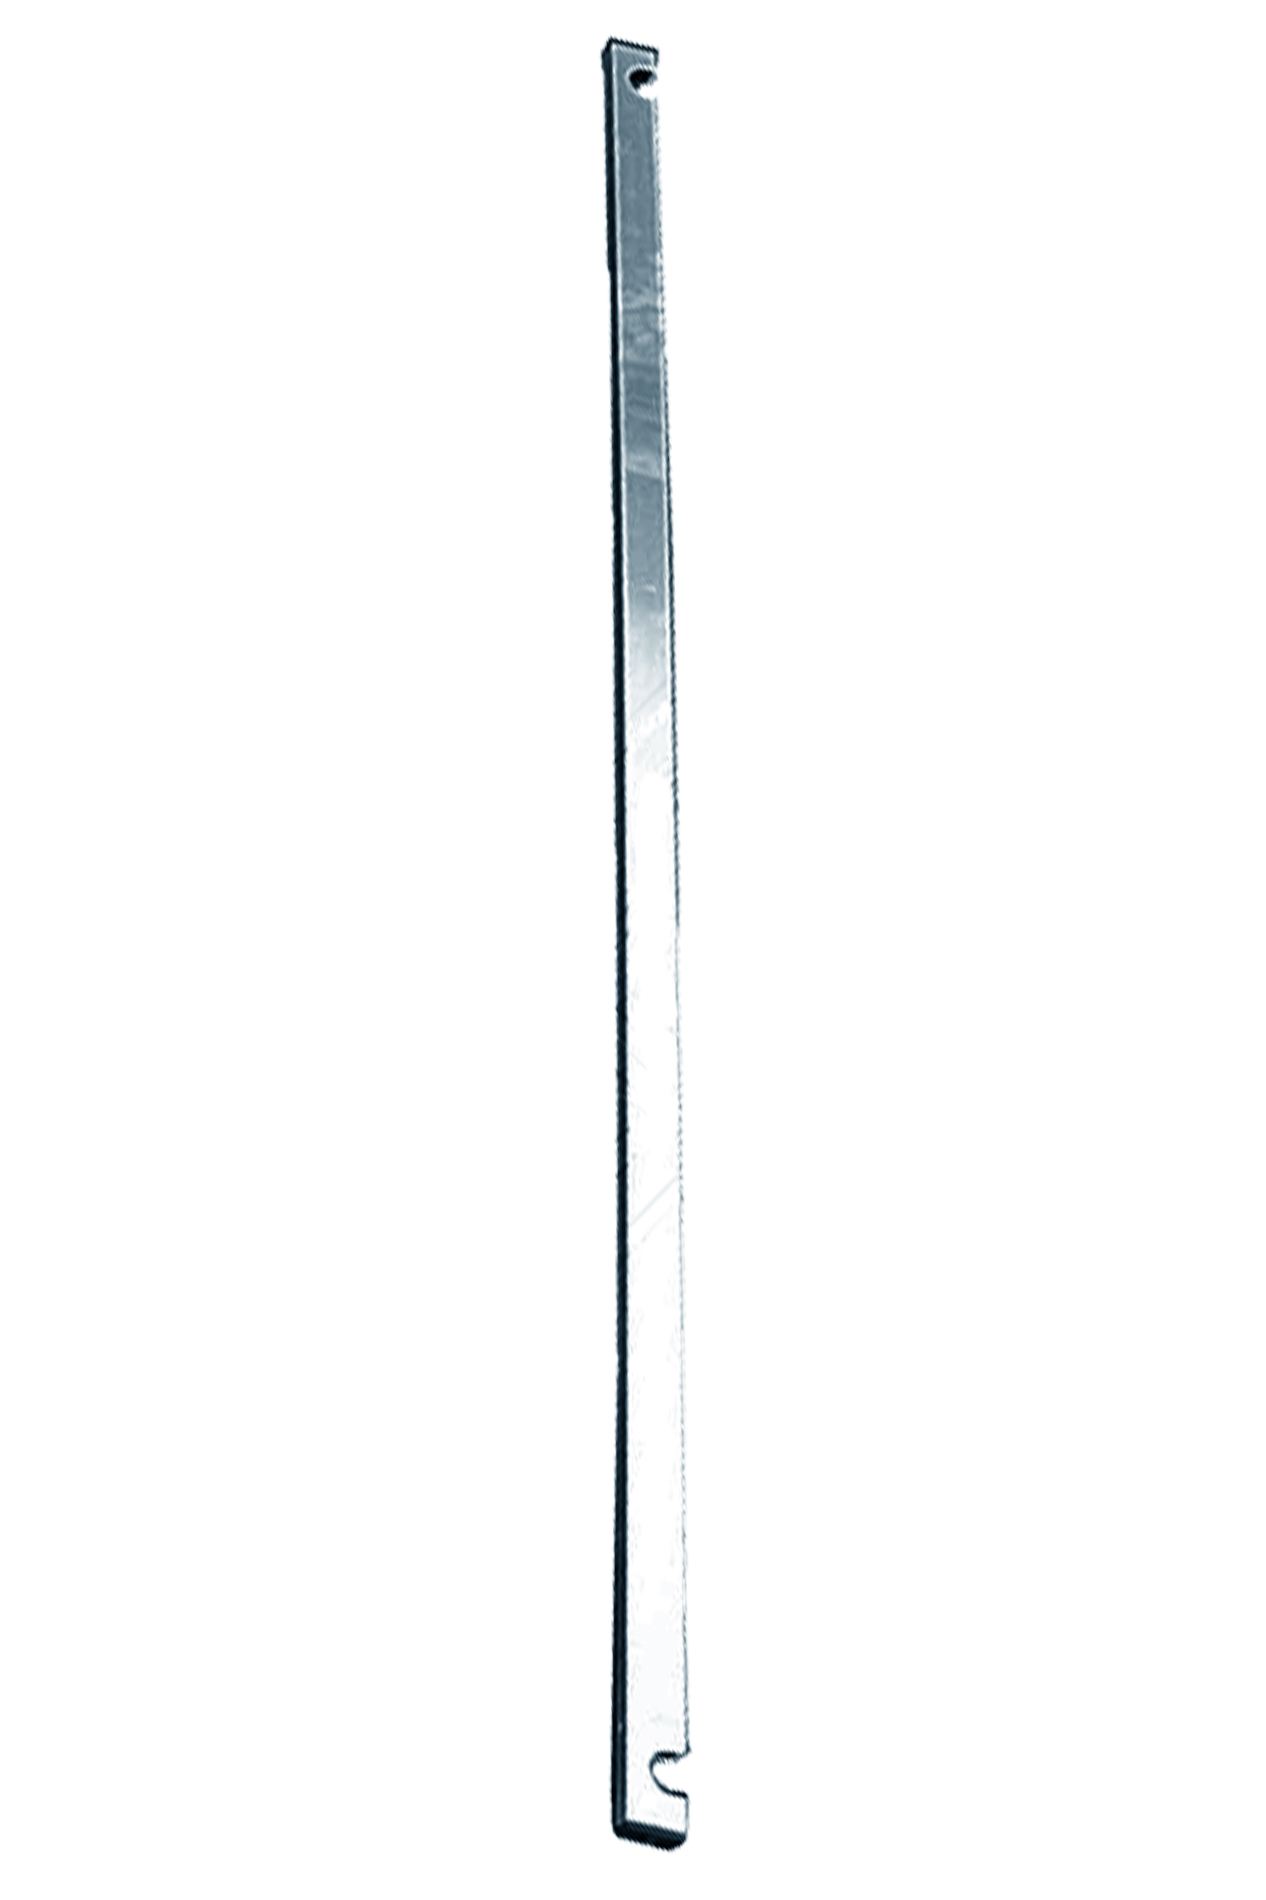 Дополнительное изображение STABILO 100-2 Передвижные подмости, рабочая высота 9,3 м, размер площадки (2.0x0.75 м)